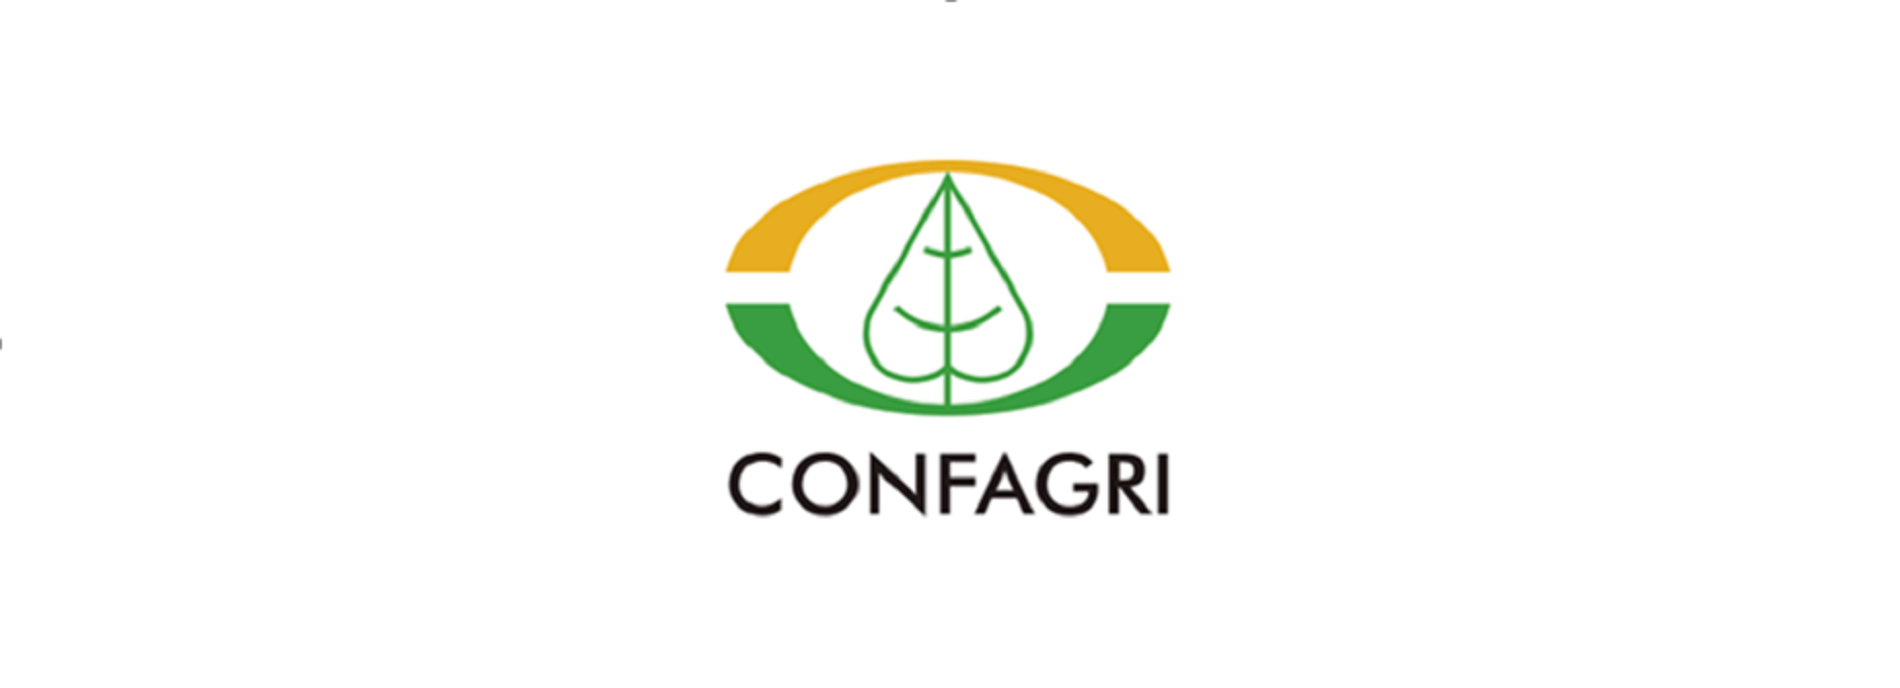 CONFAGRI – Confederação Nacional das Cooperativas Agrícolas e do Crédito Agrícola de Portugal